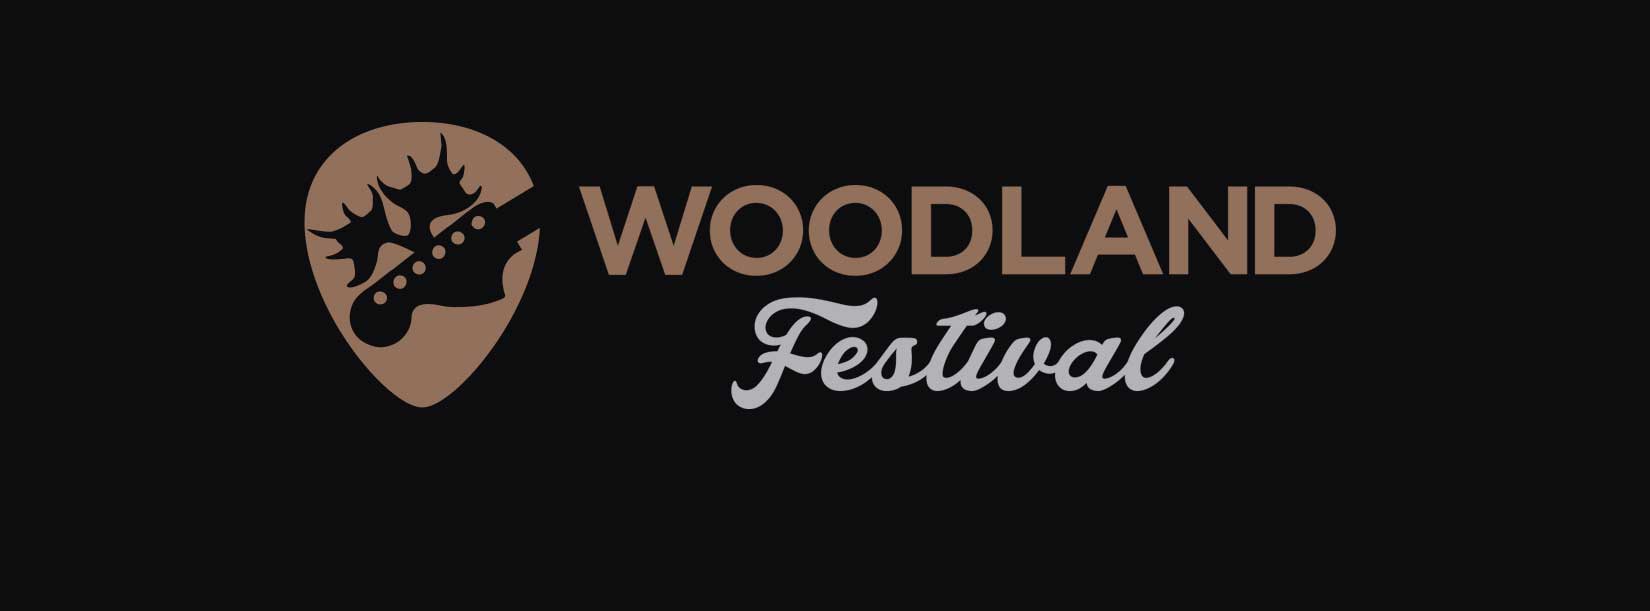 Forsidebilde-woodland-logo